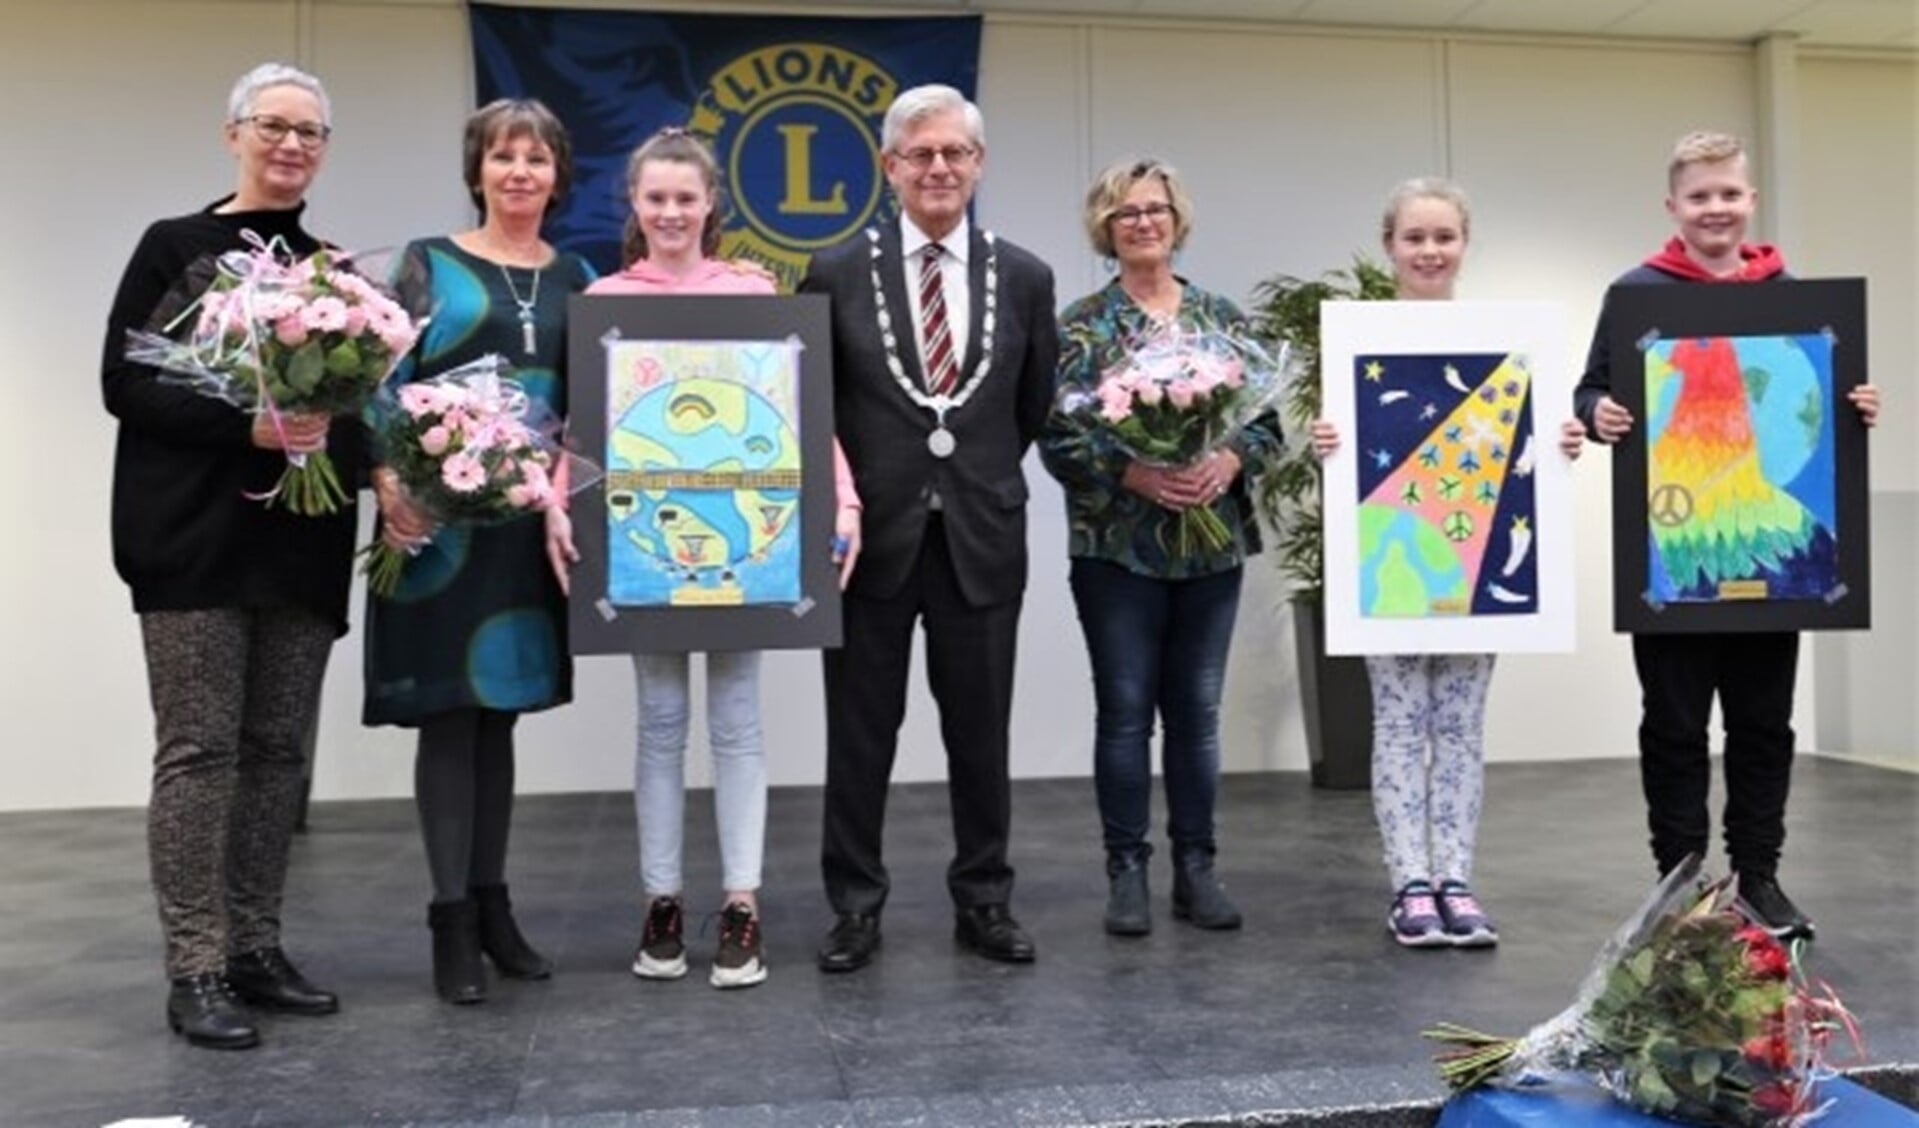 De winnaars samen met de burgemeester, jury en tekendocente mevrouw Wijtenburg. Foto: Fred Roland